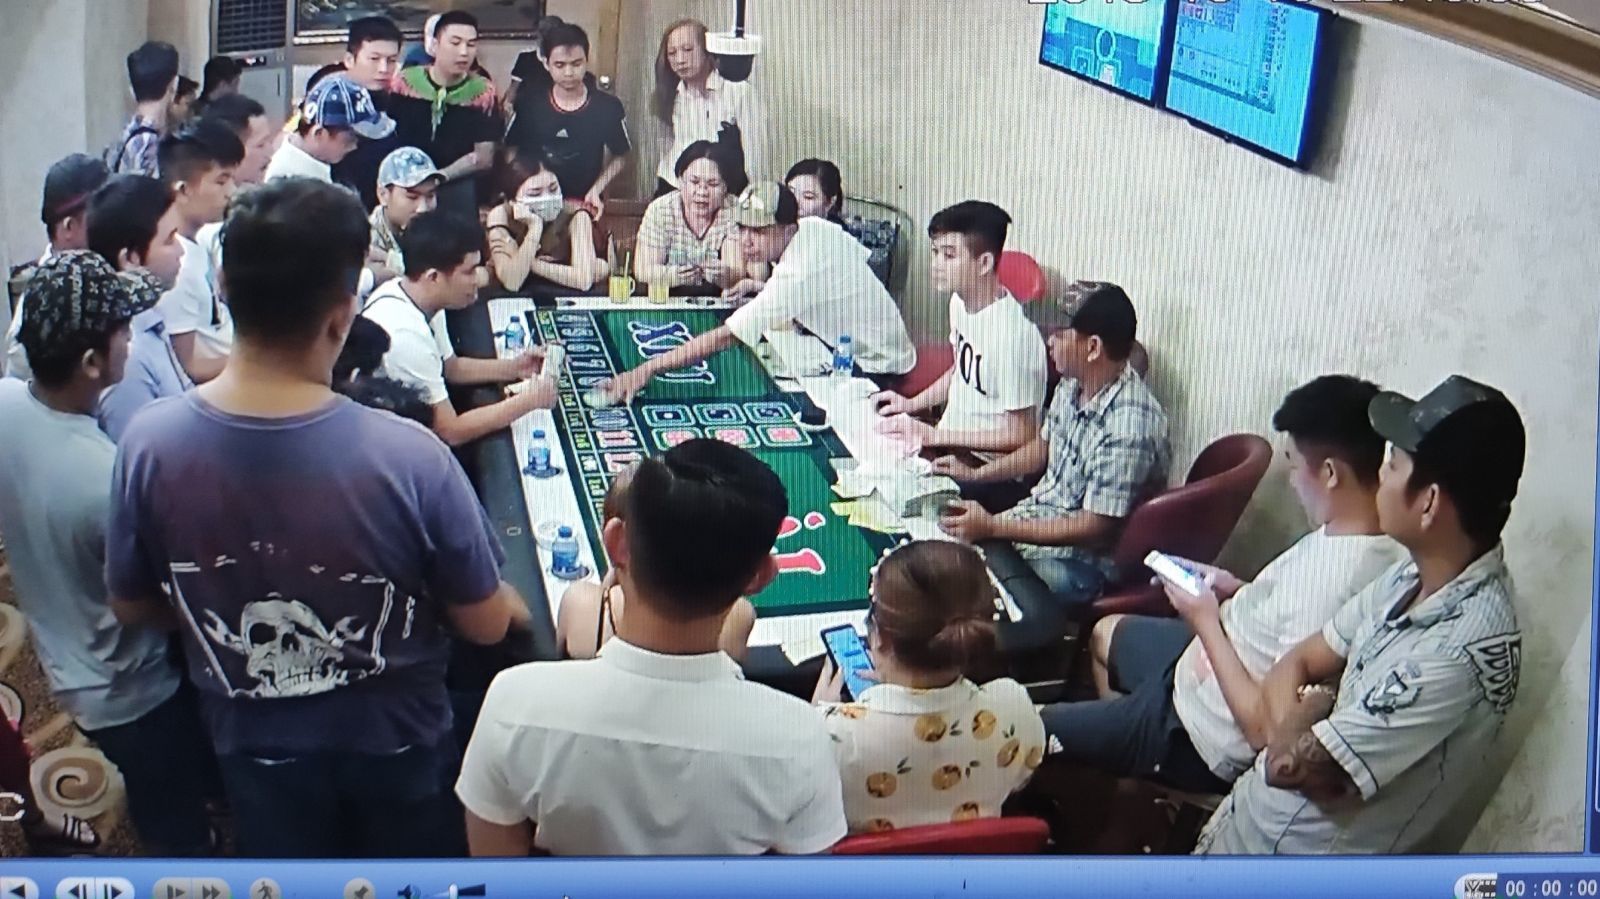 Độc chiêu giám đốc ở Cần Thơ tổ chức đánh bạc dưới tầng hầm khách sạn - Ảnh 1.